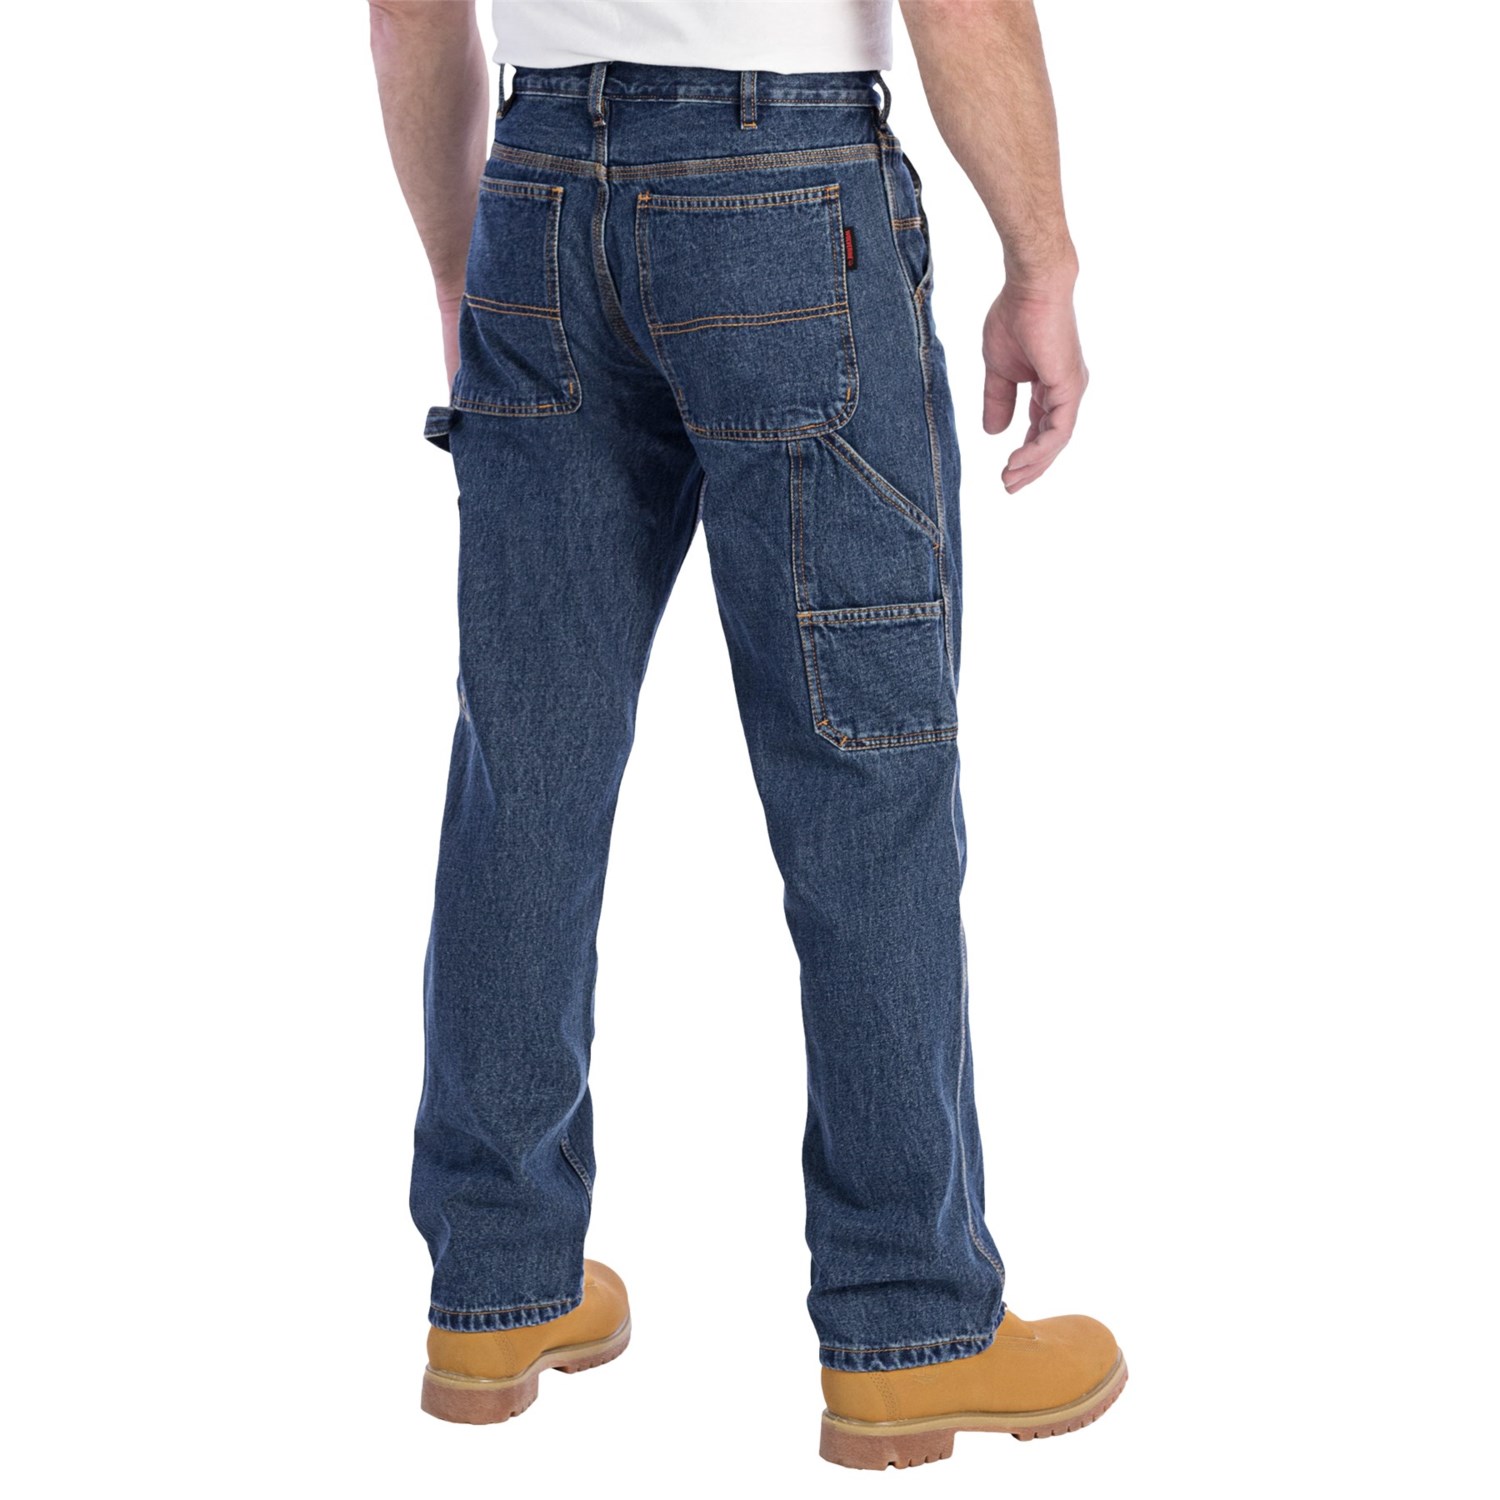 Wolverine Hammer Loop Jeans (For Men) 6293M - Save 46%